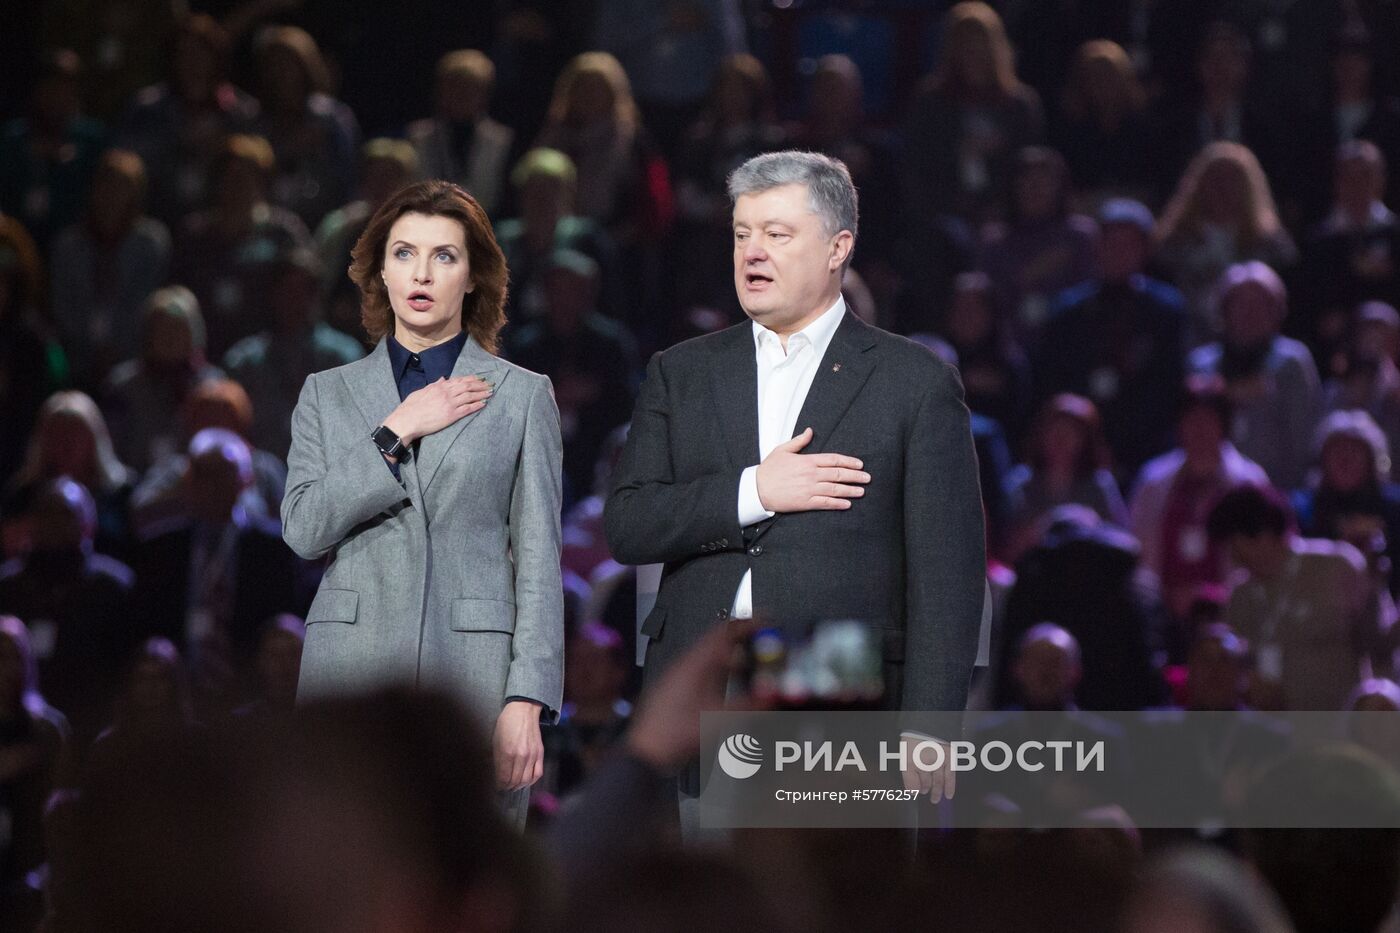 П. Порошенко представил предвыборную программу